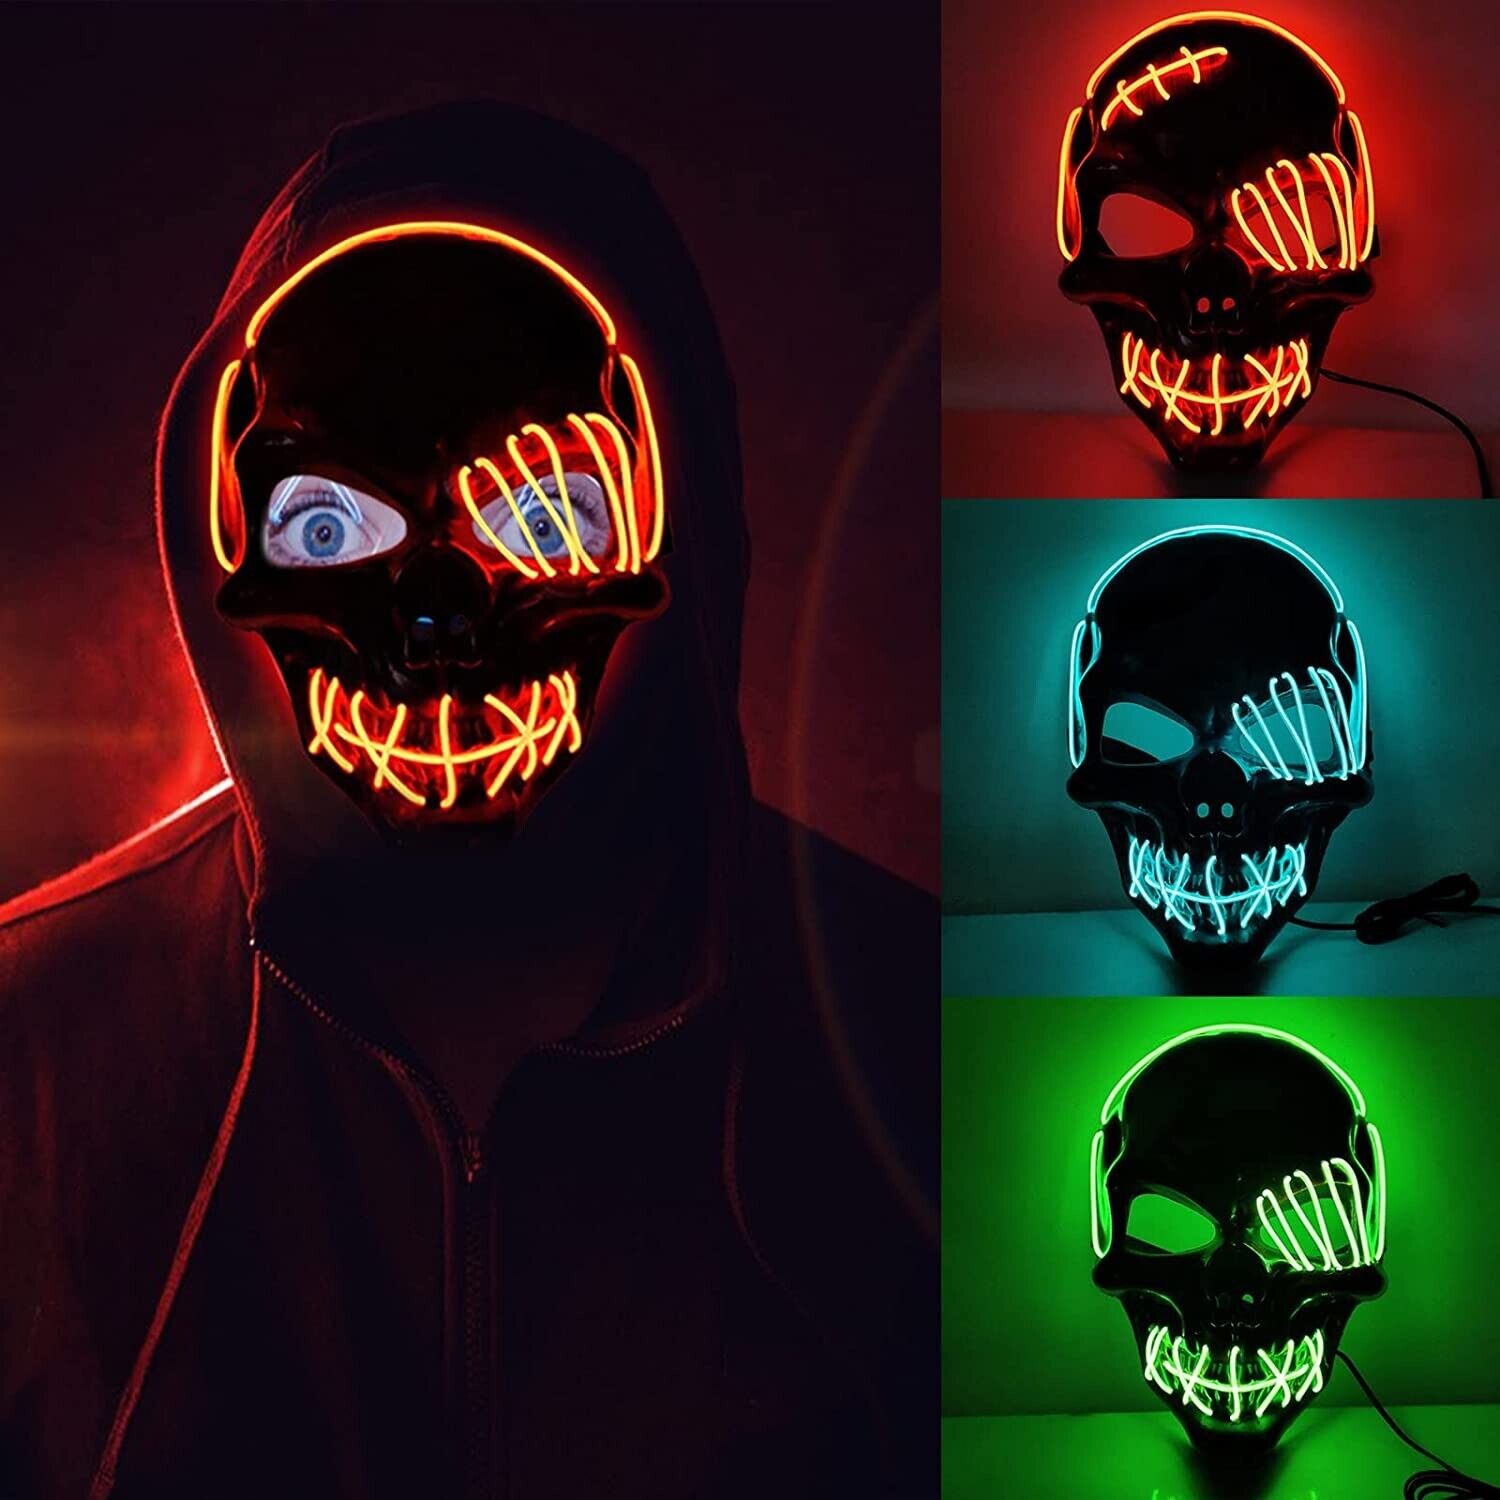 LED Grusel Maske wie aus the Purge - Halloween Horror Verkleidung Gesichtsmaske